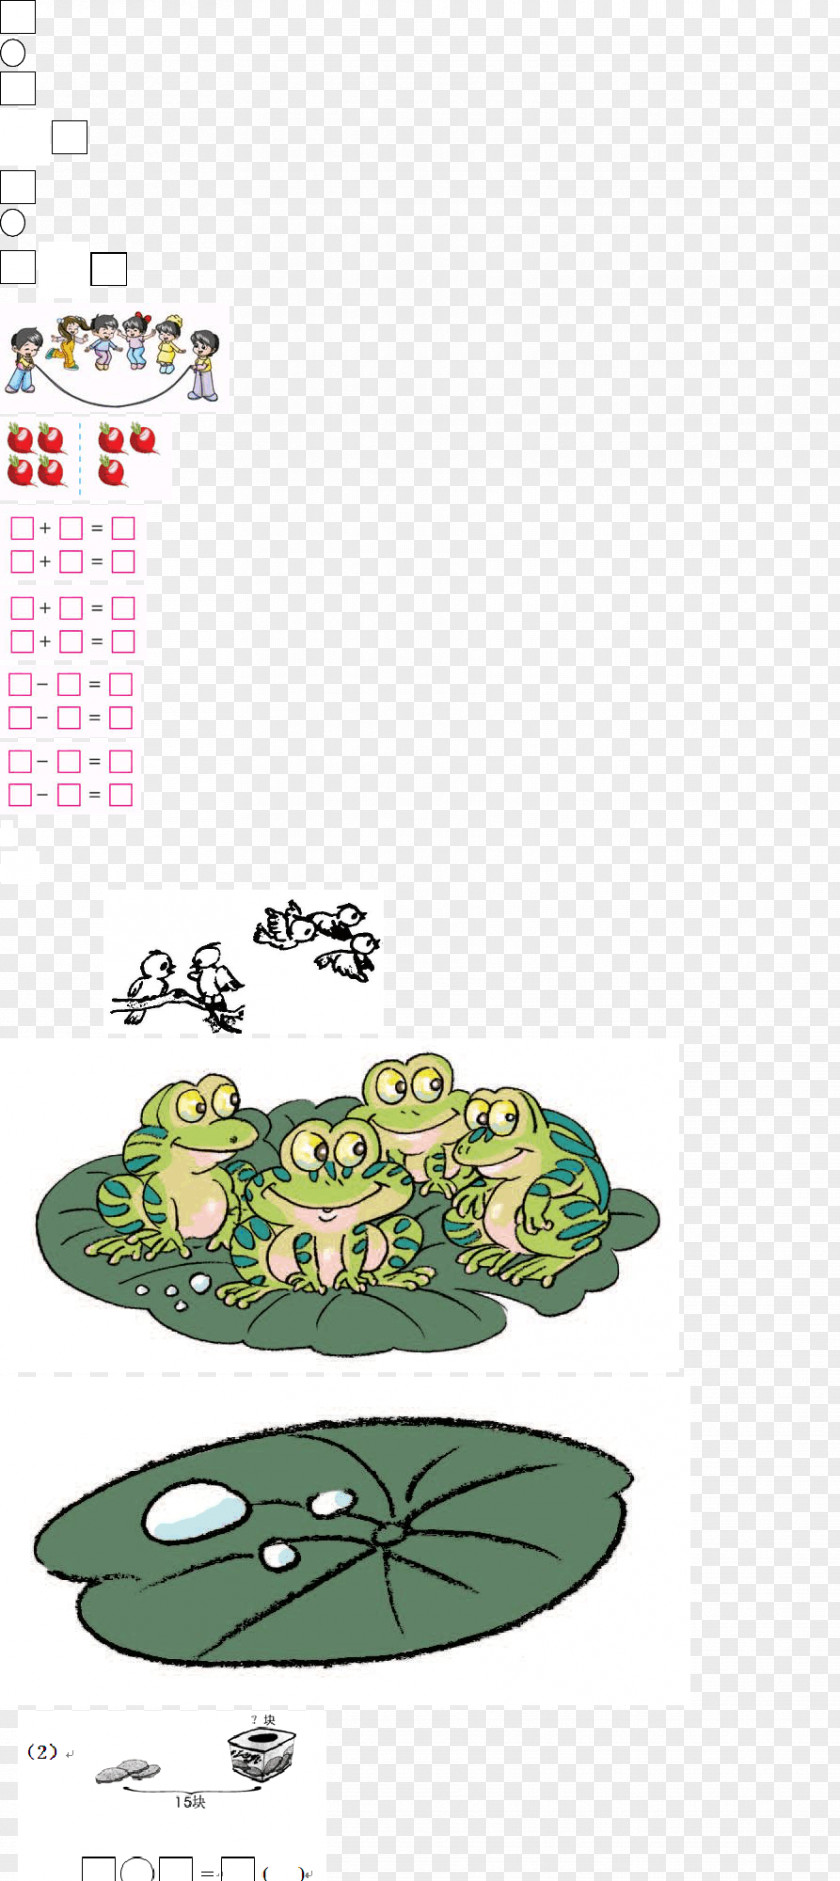 Brace Single Reptile Illustration Clip Art Amphibians Product Design PNG